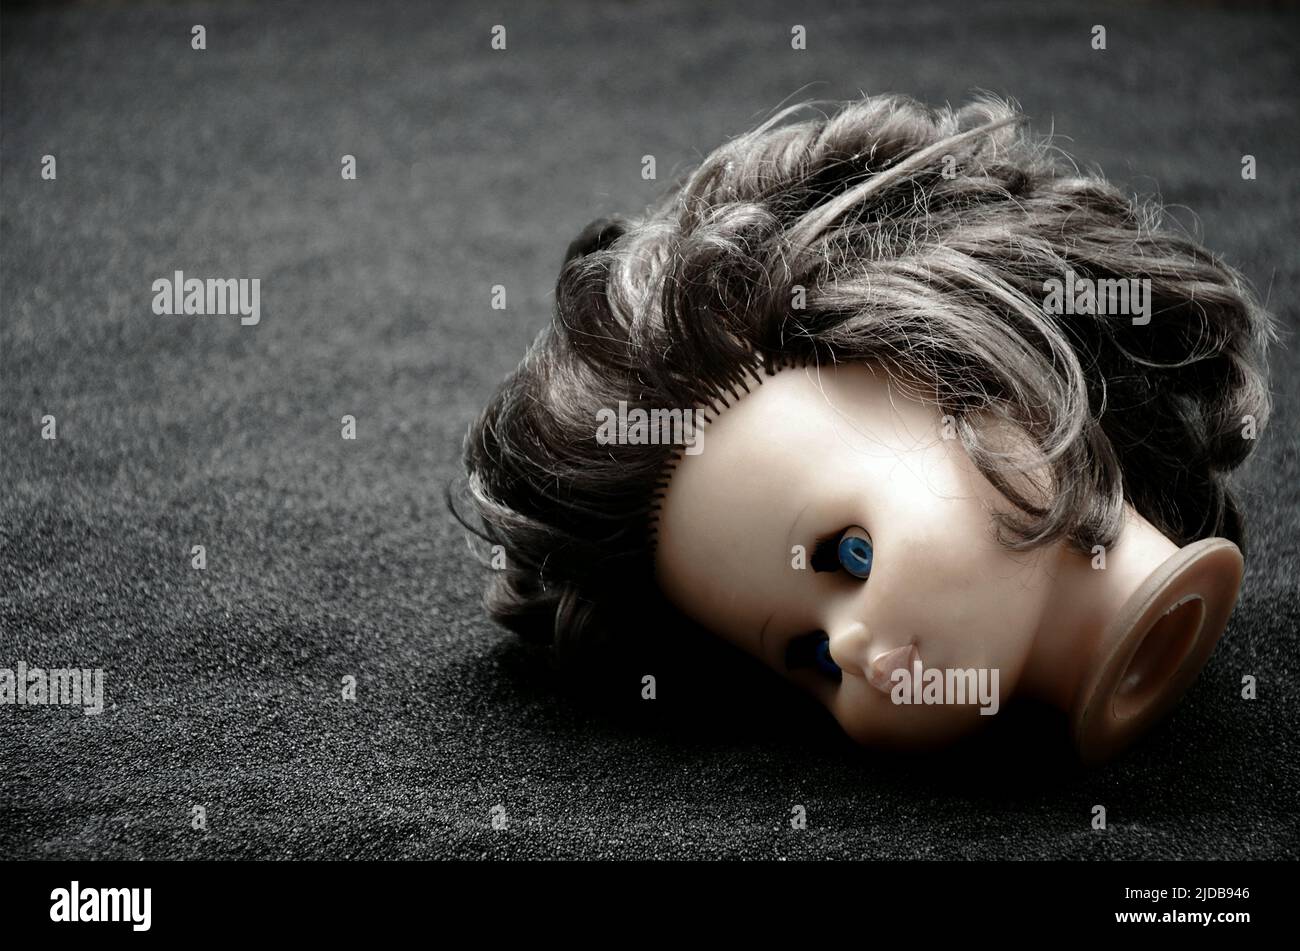 creepy doll head Stock Photo